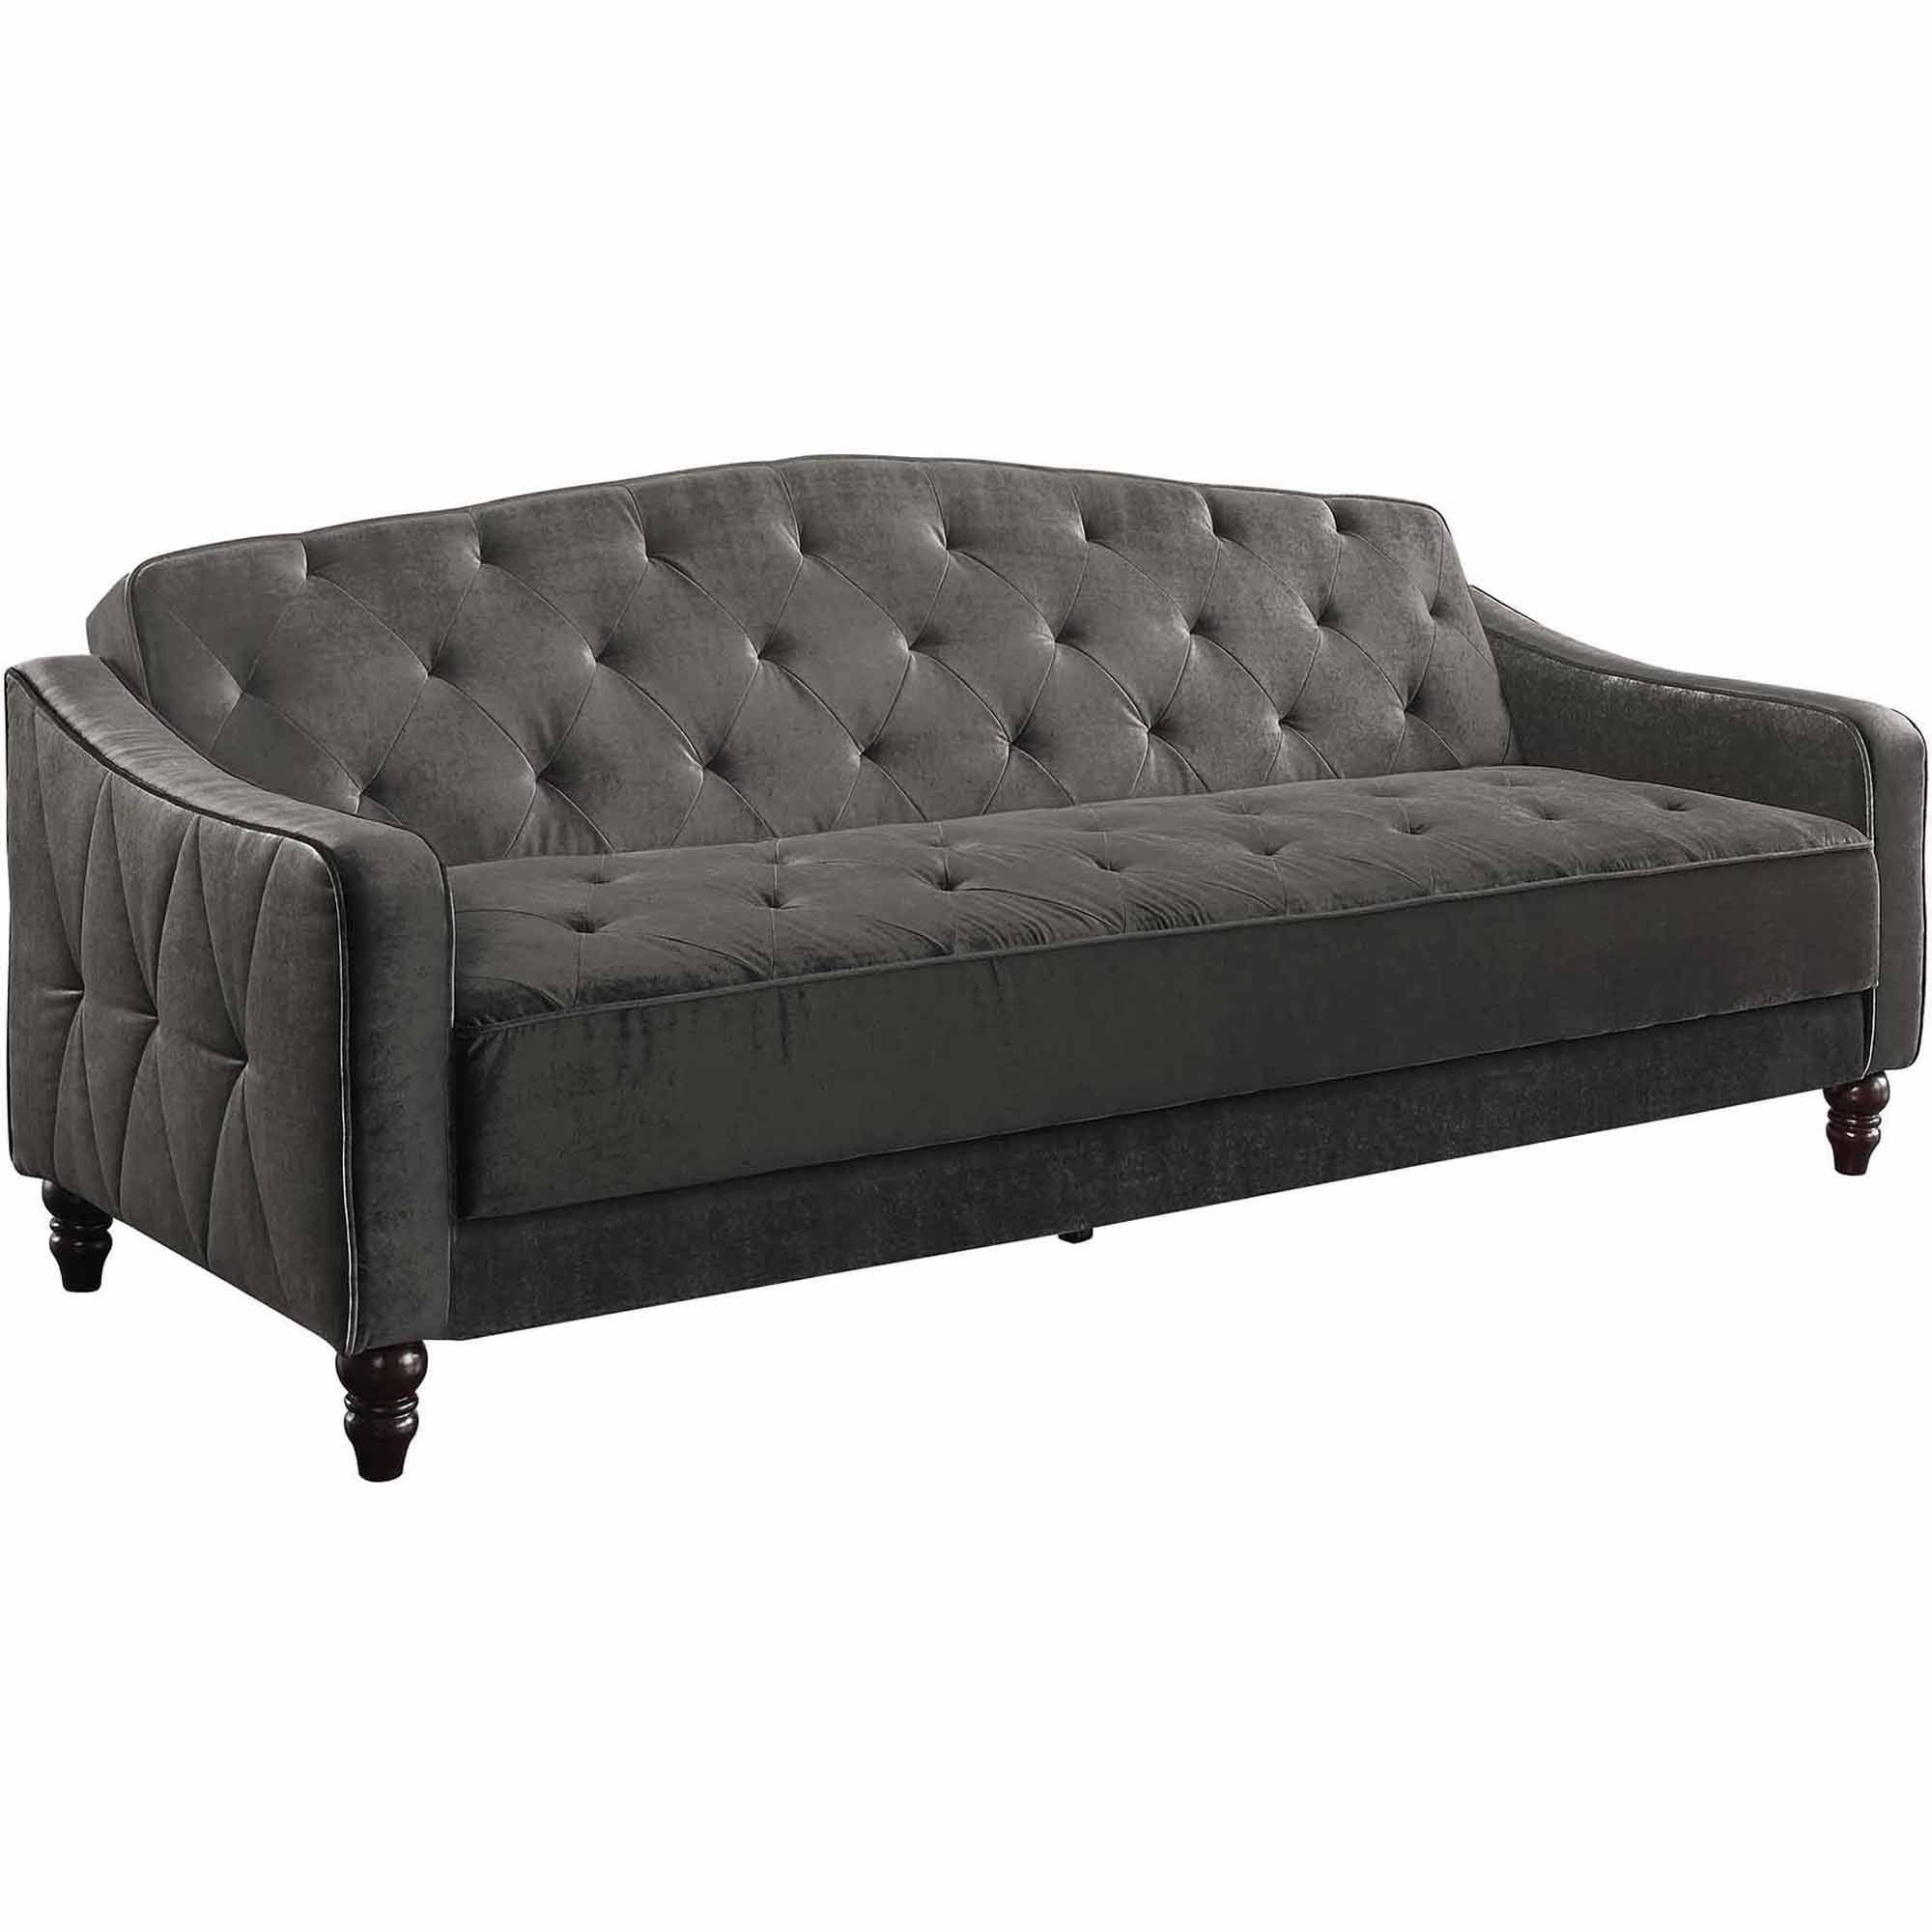 Furniture: Loveseat Walmart | Ava Velvet Tufted Sleeper Sofa With Ava Velvet Tufted Sleeper Sofas (View 13 of 15)